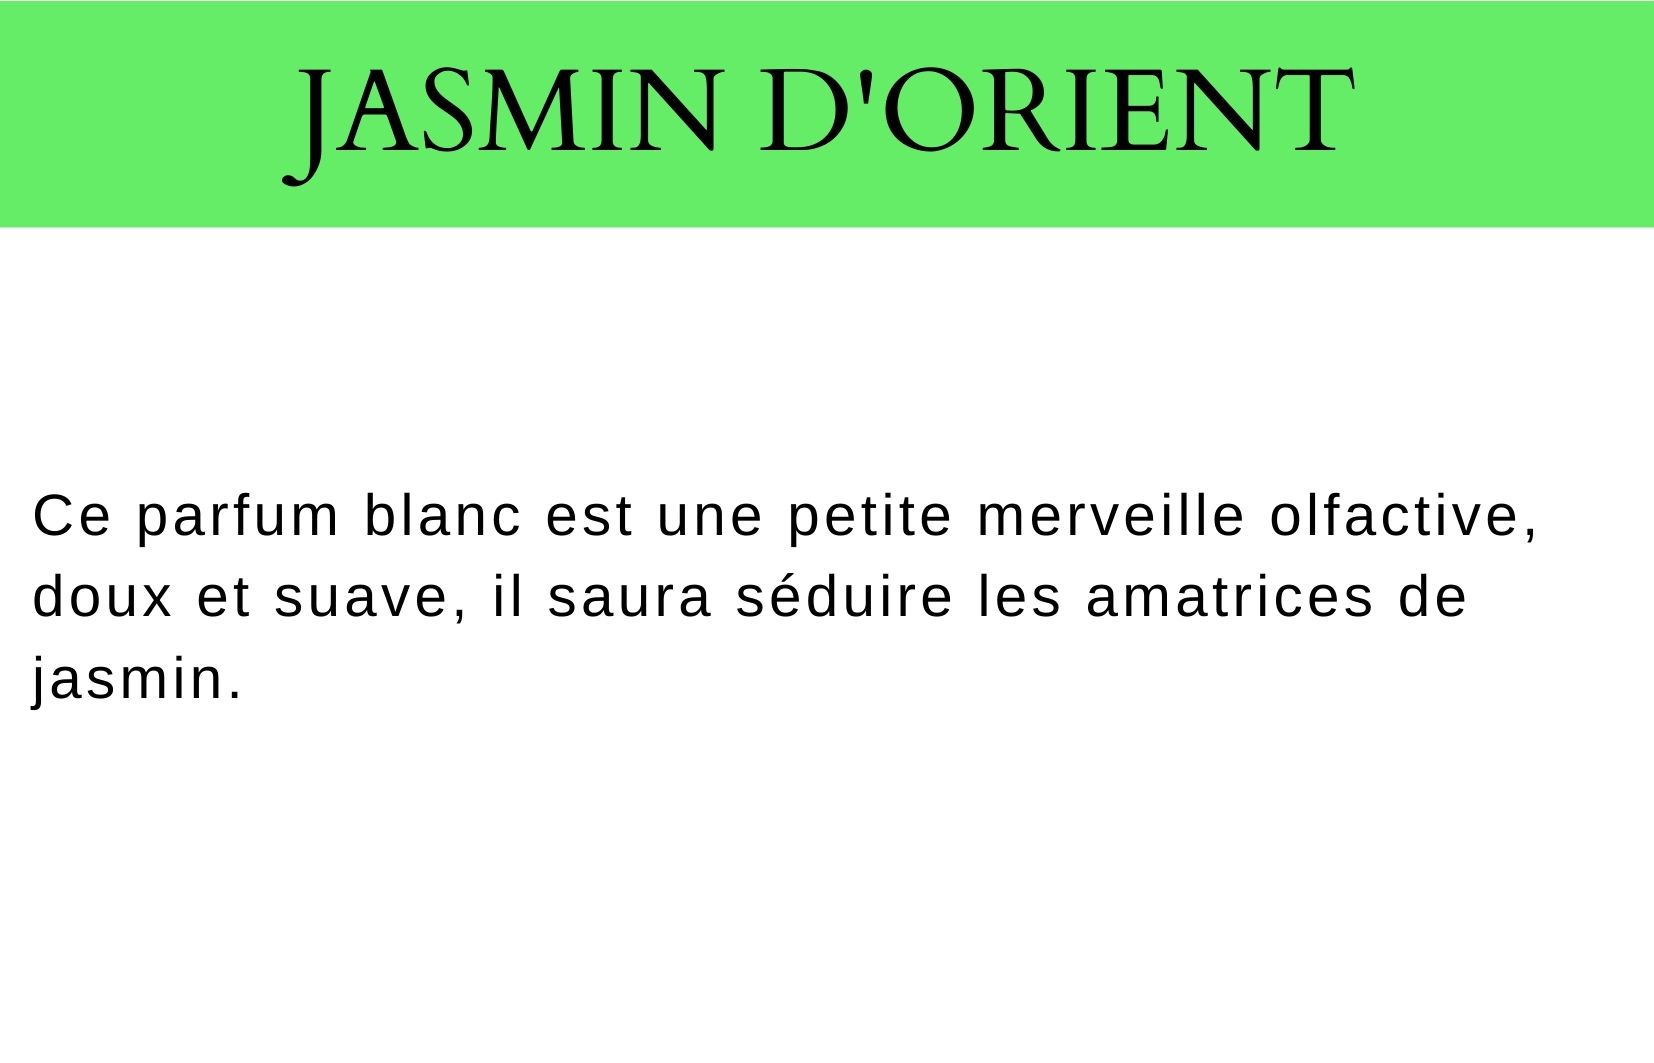 Jasmin d'Orient description fragrance